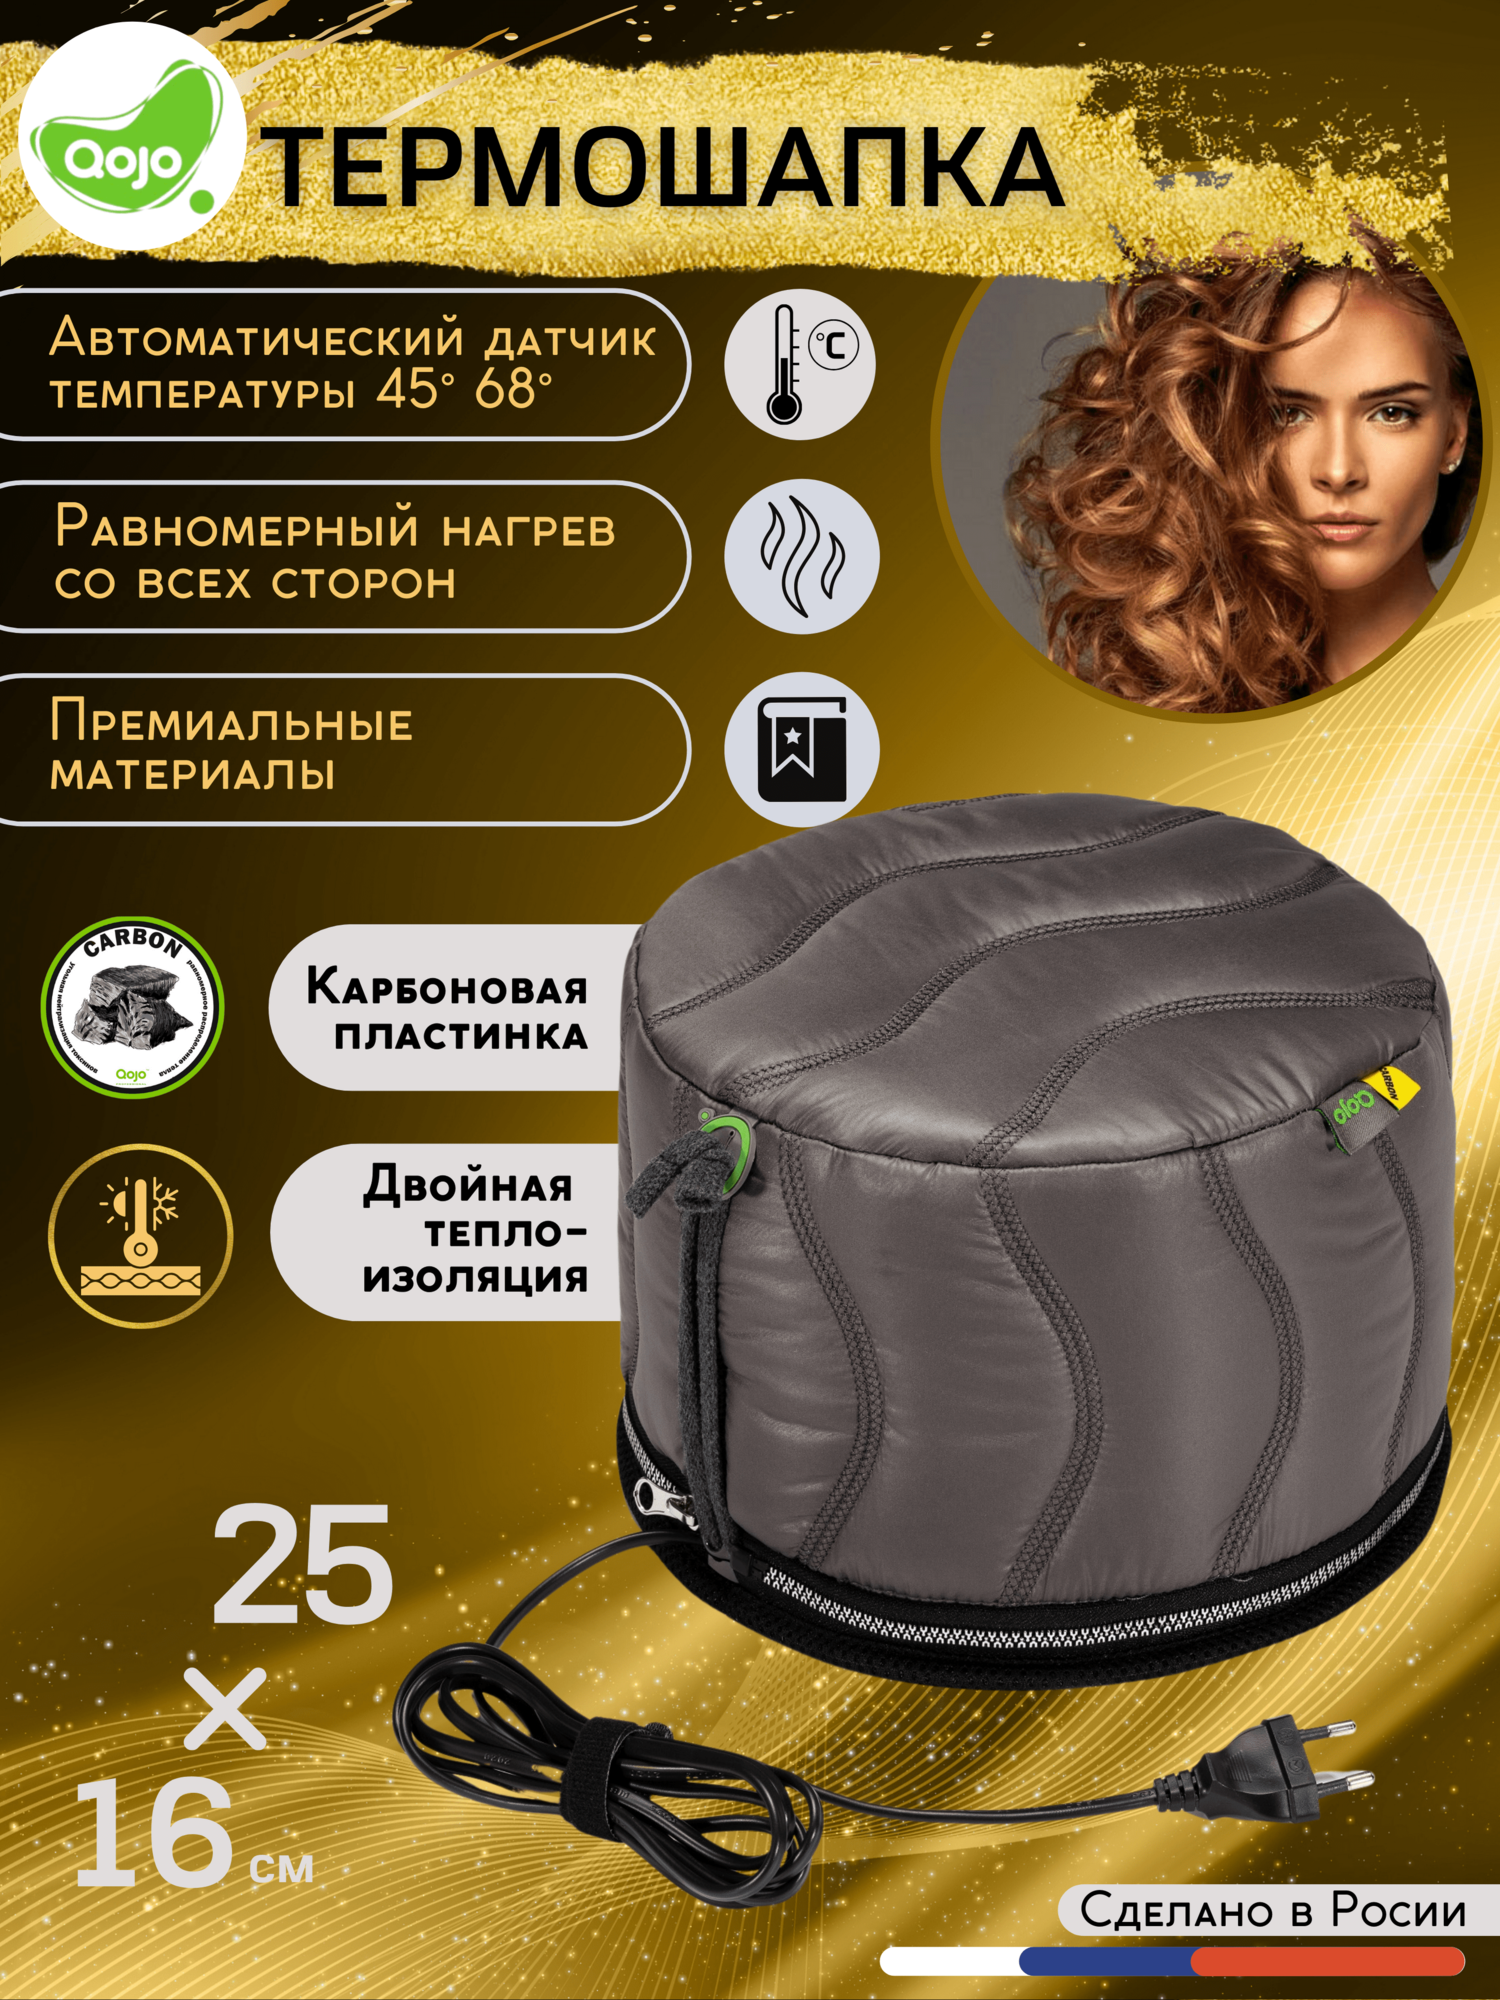 Термошапка для волос электрическая Qojo Sirius Carbon (Gray) 25x18 см c угольной мембраной и двойной теплоизоляцией